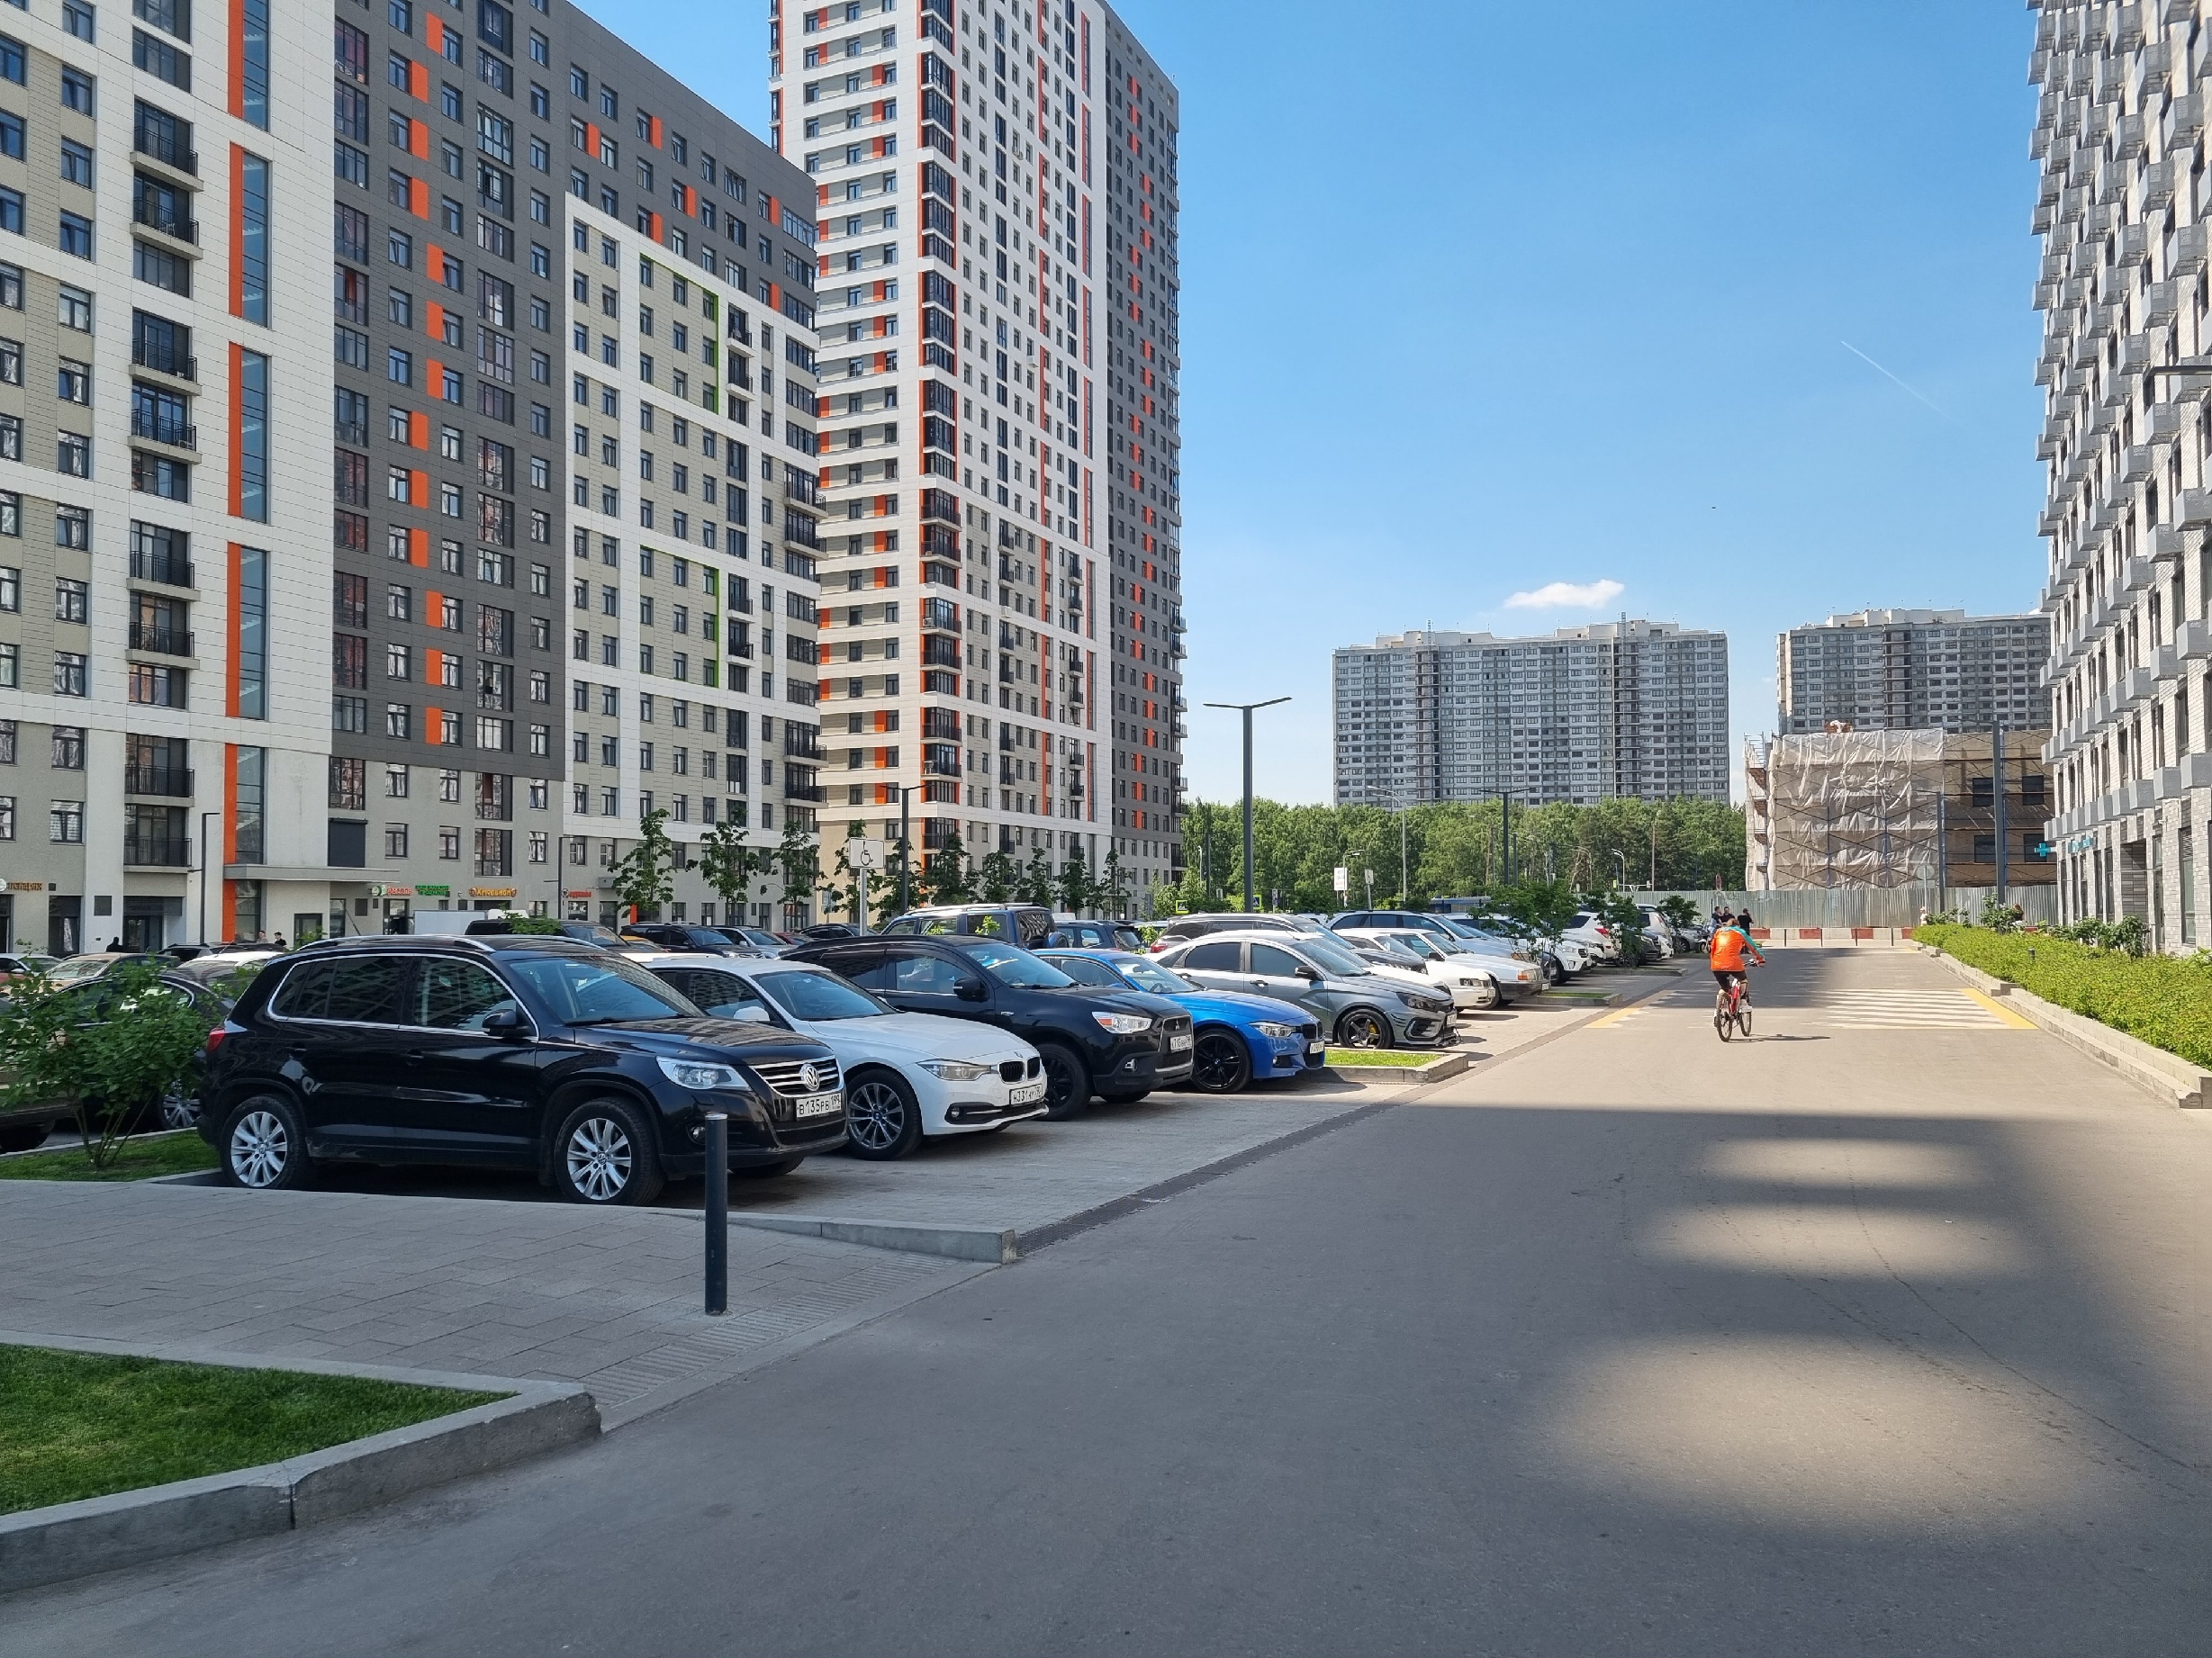 Гостевые парковки располагаются за пределами дворовых территорий. Вид в сторону Кузьминского лесопарка, лето 2022 года.